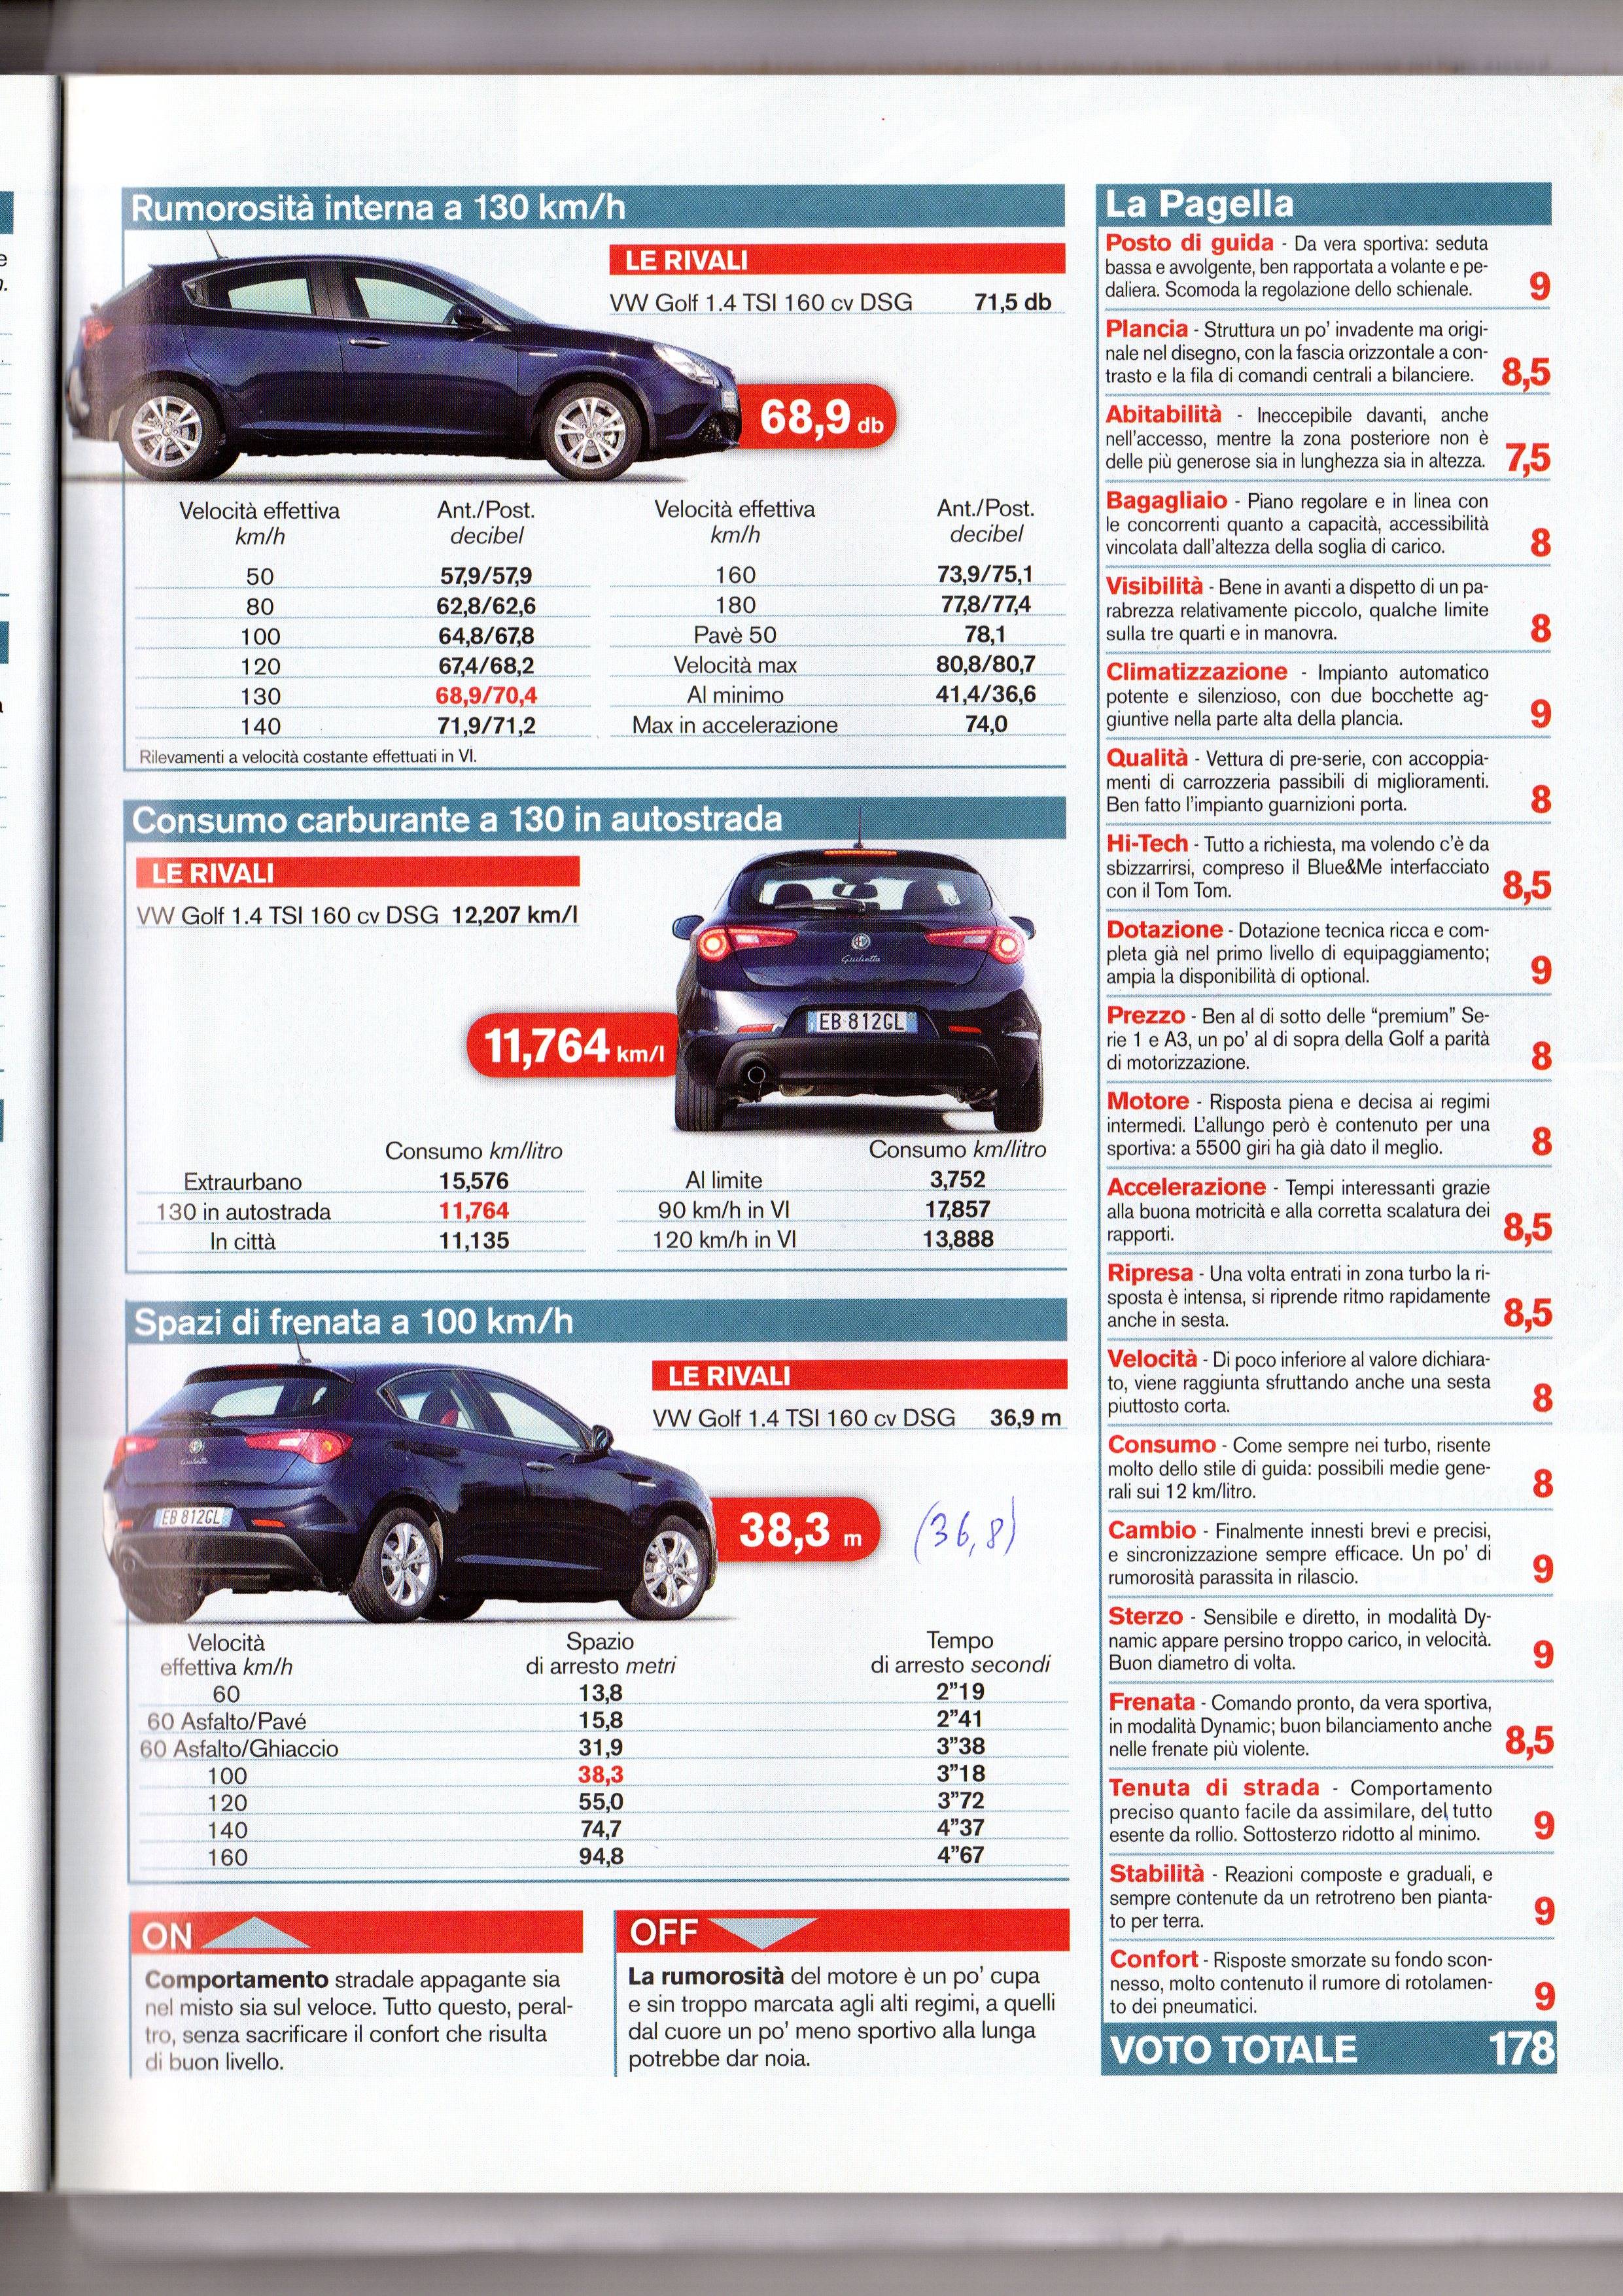 Giulietta Consumi AUTO -2010.jpg